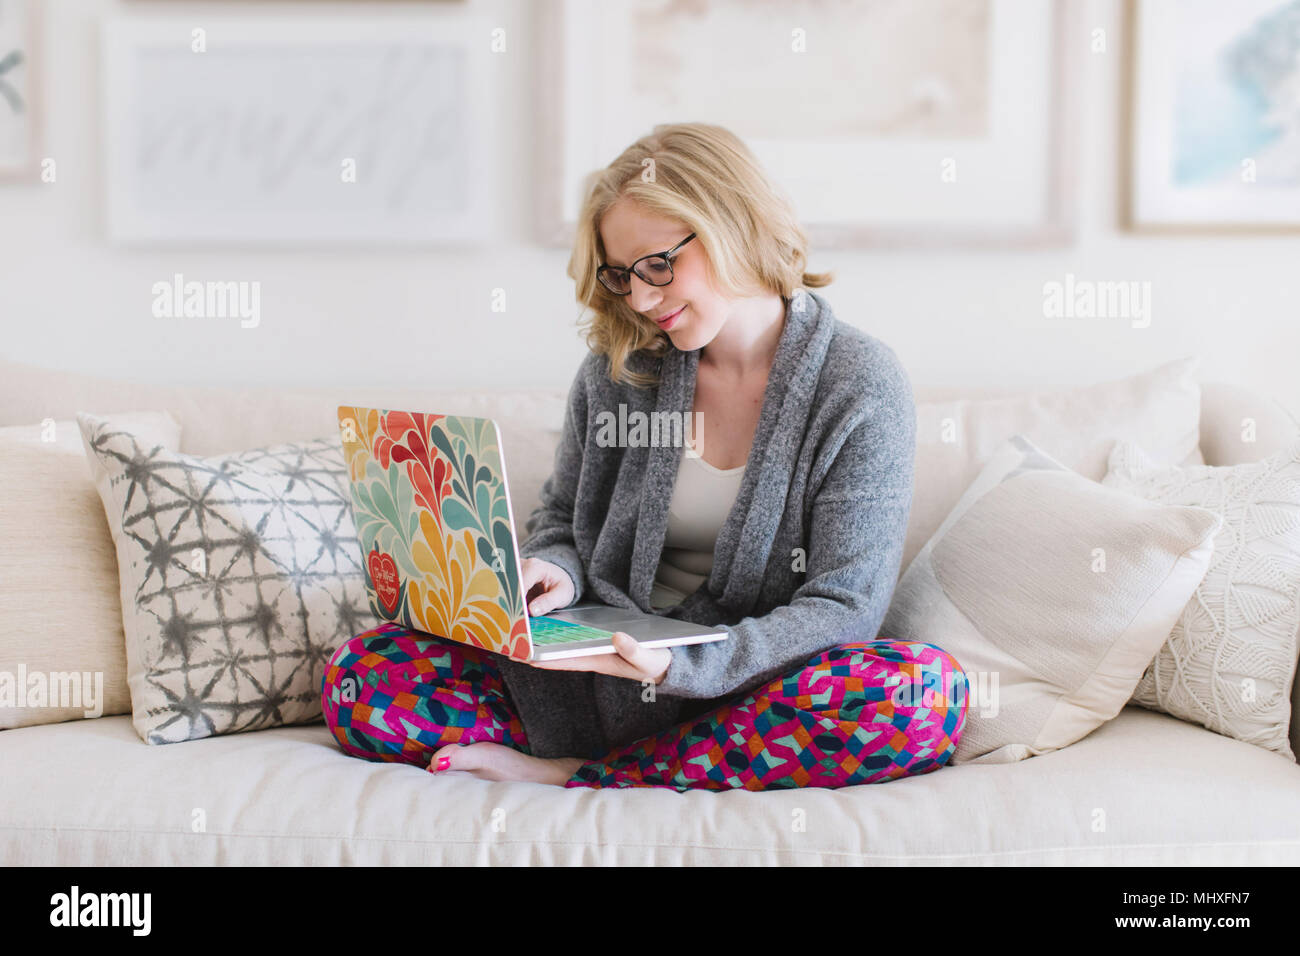 Jeune femme assise sur un canapé-typing on laptop Banque D'Images